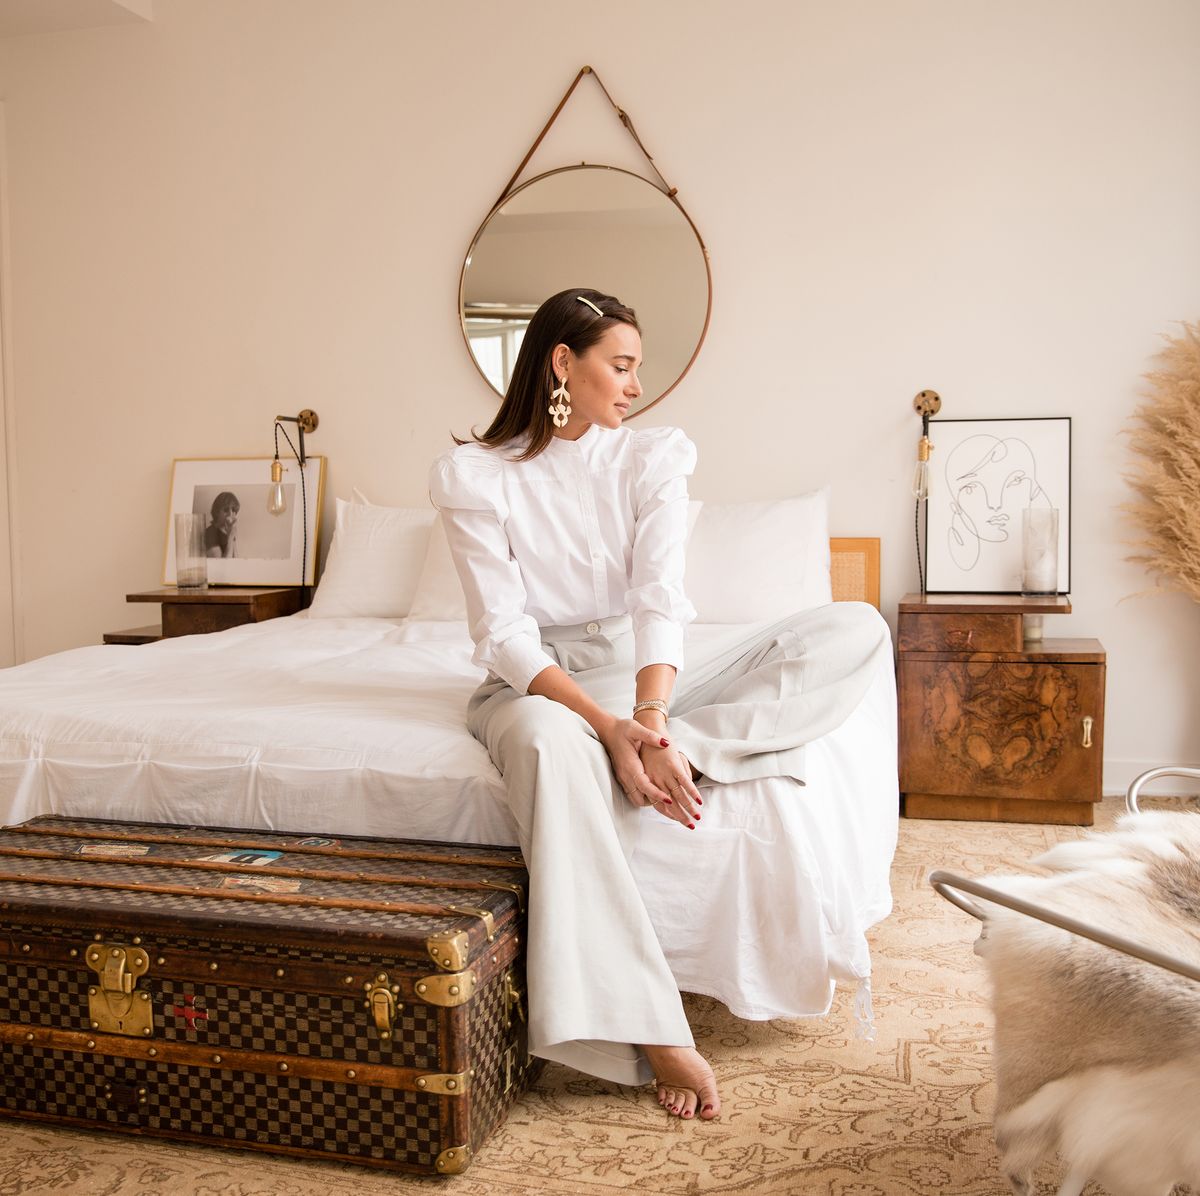 Buy Louis Vuitton Brands 13 Bedding Set Bed Sets, Bedroom Sets